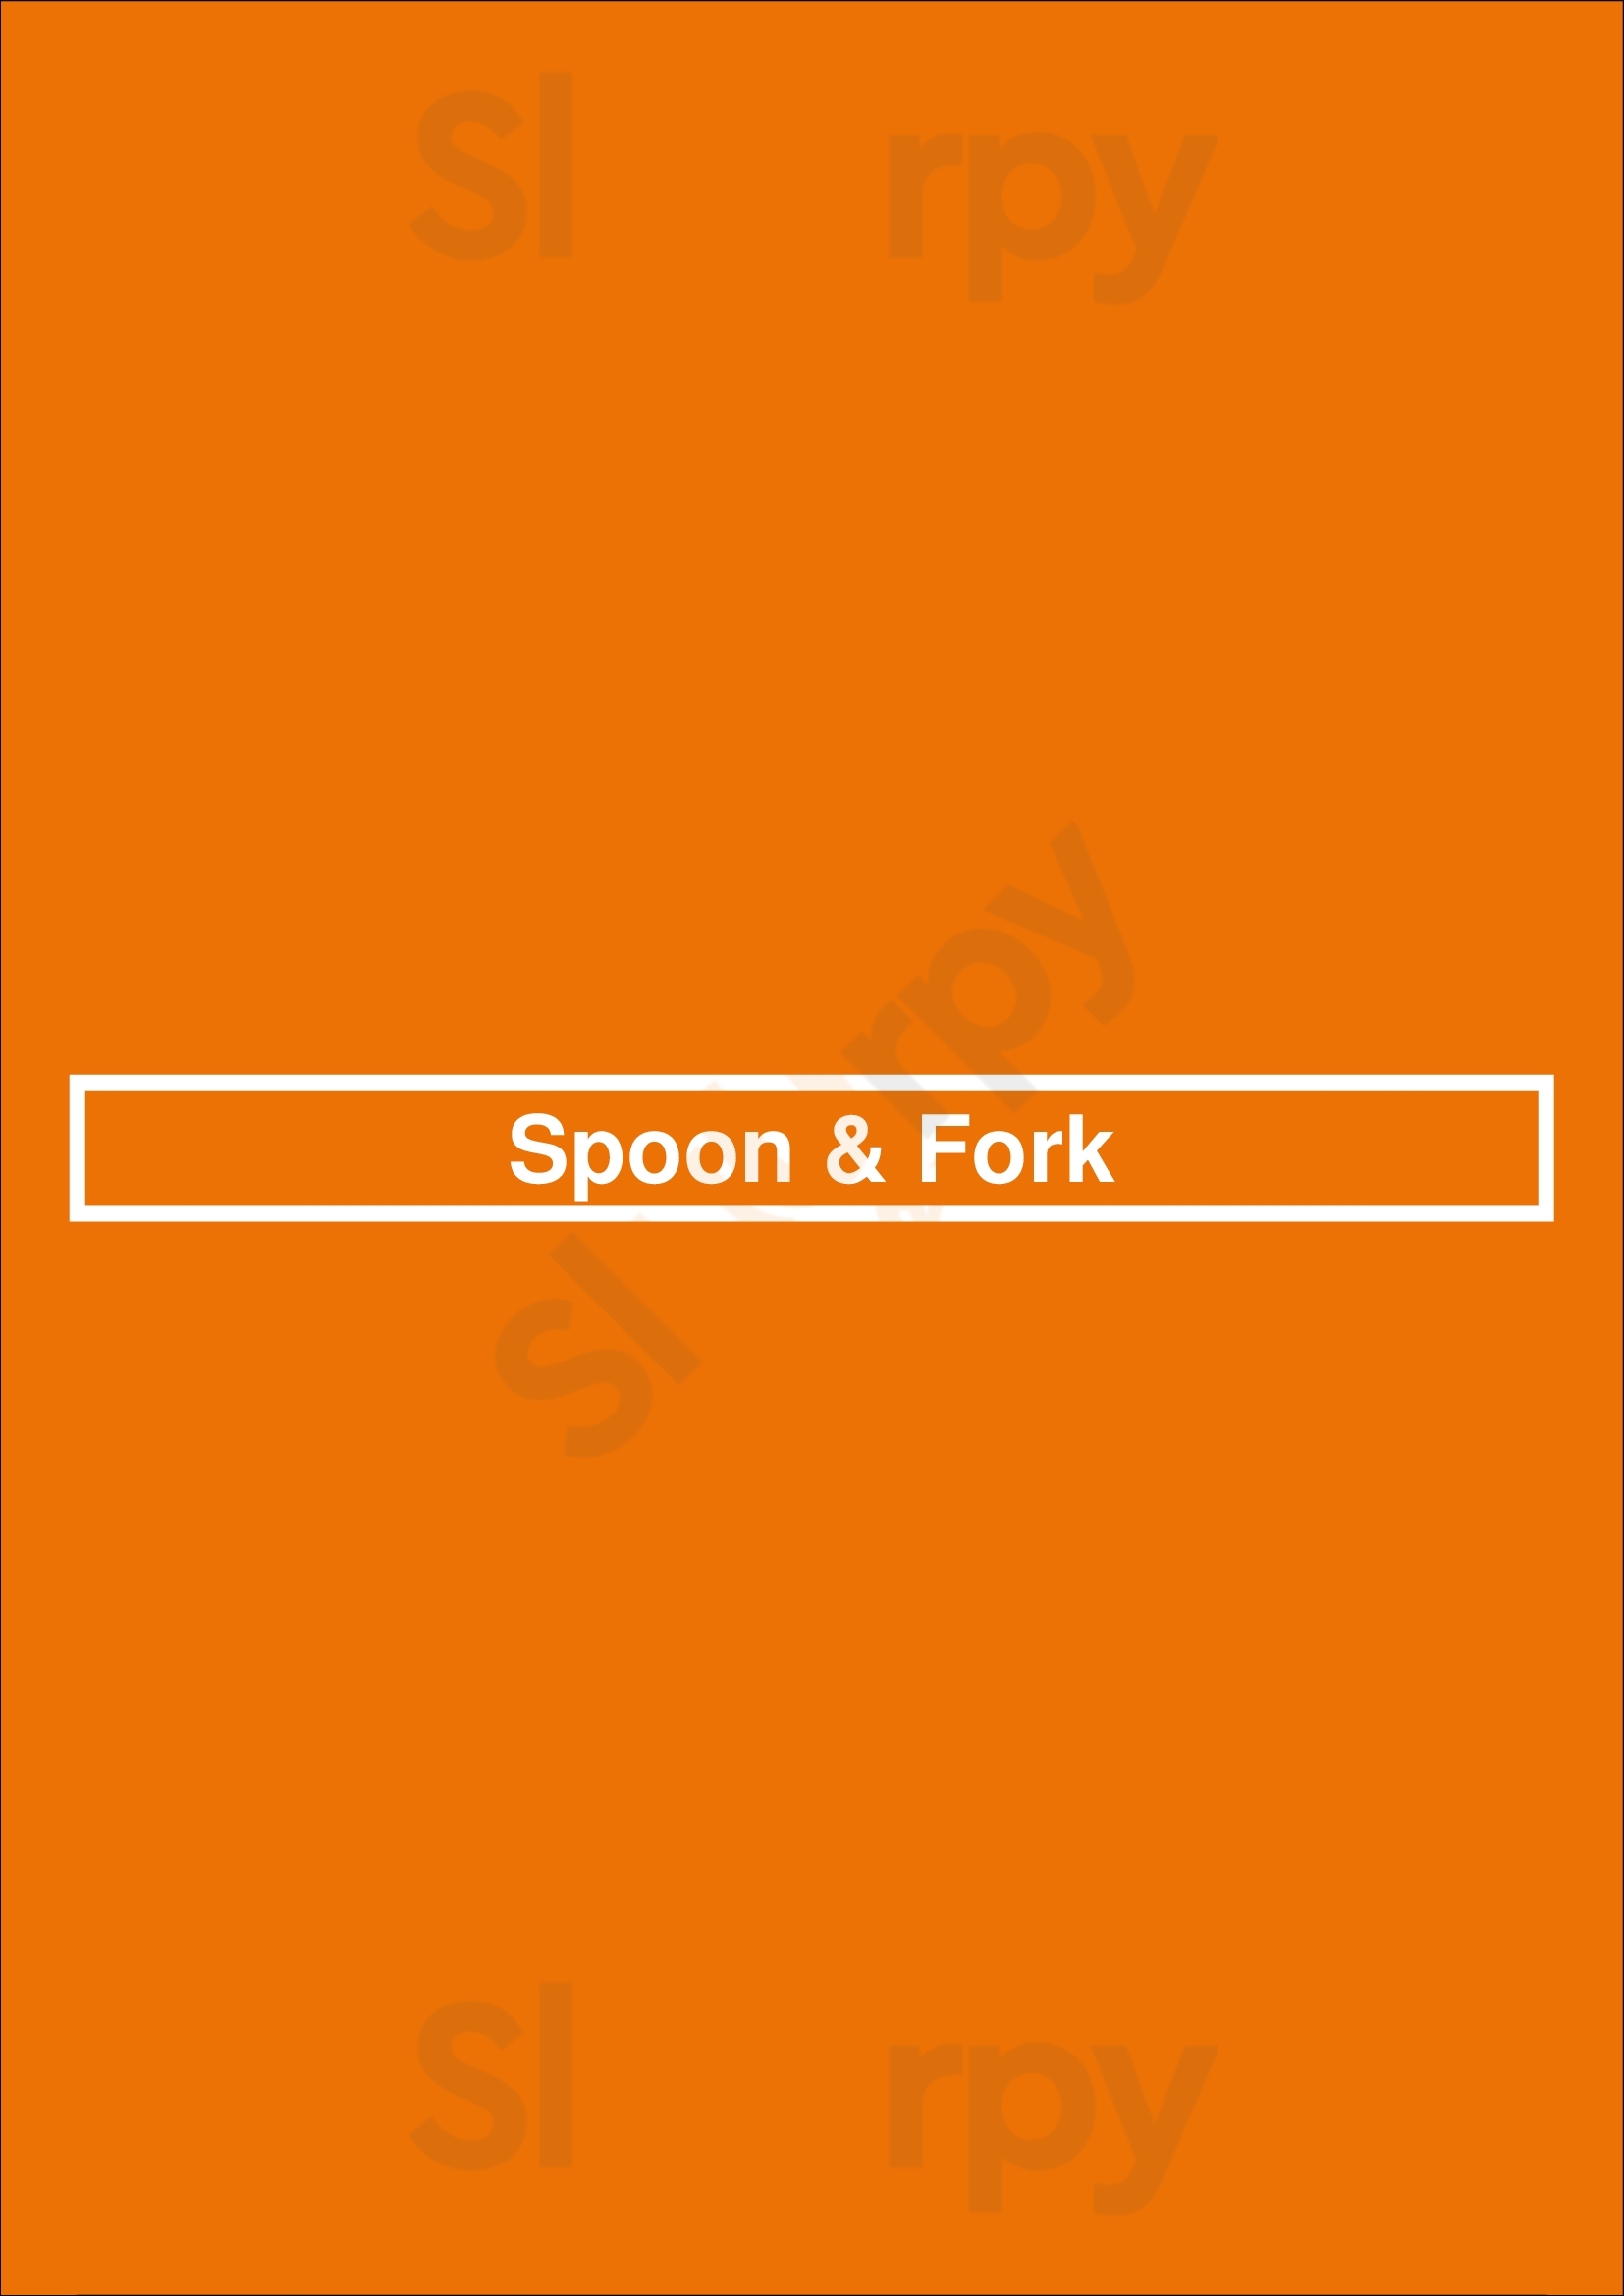 Spoon & Fork Barrie Menu - 1